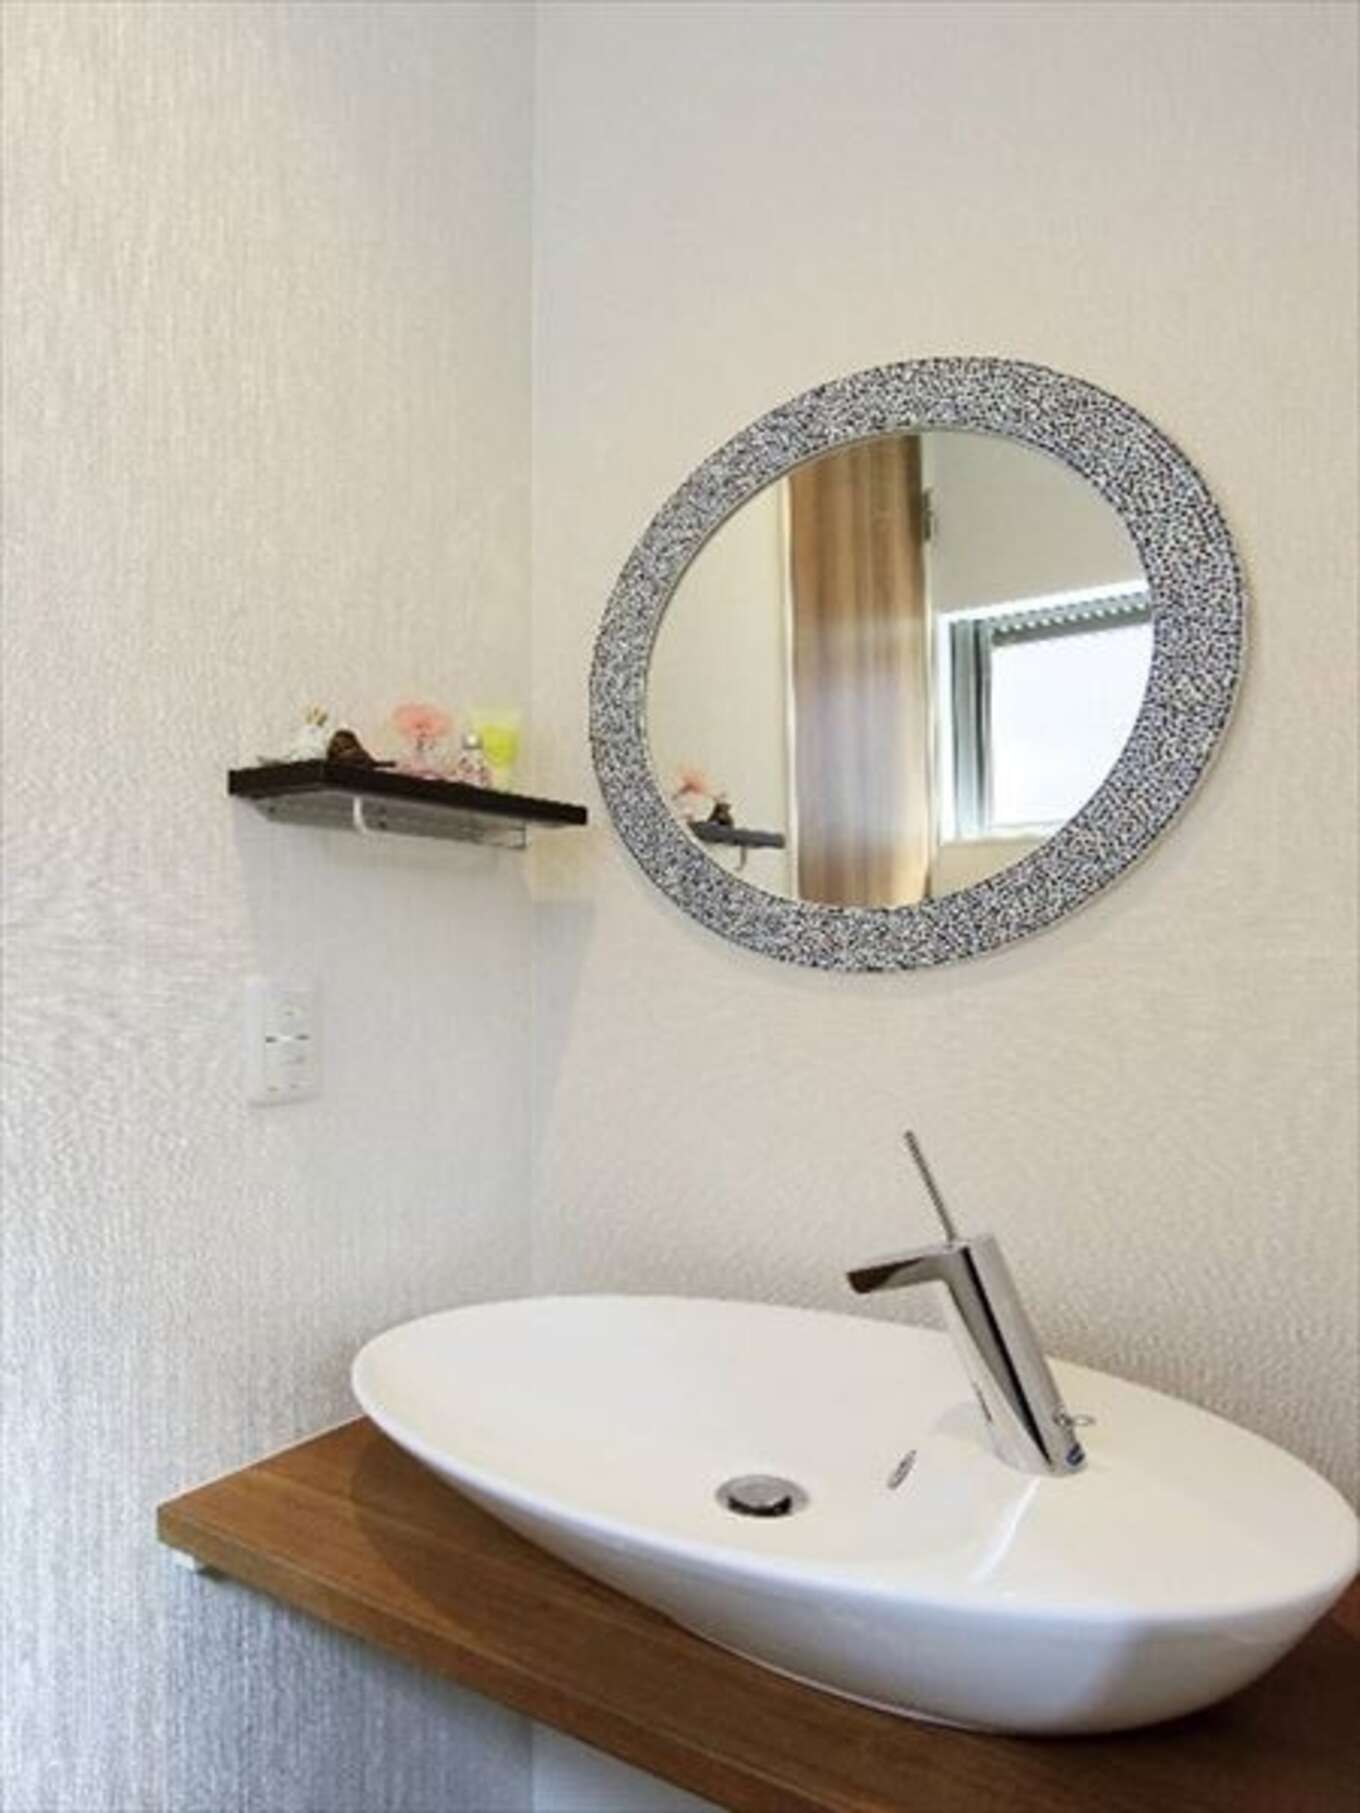 丸い鏡がとっても素敵な造作洗面台